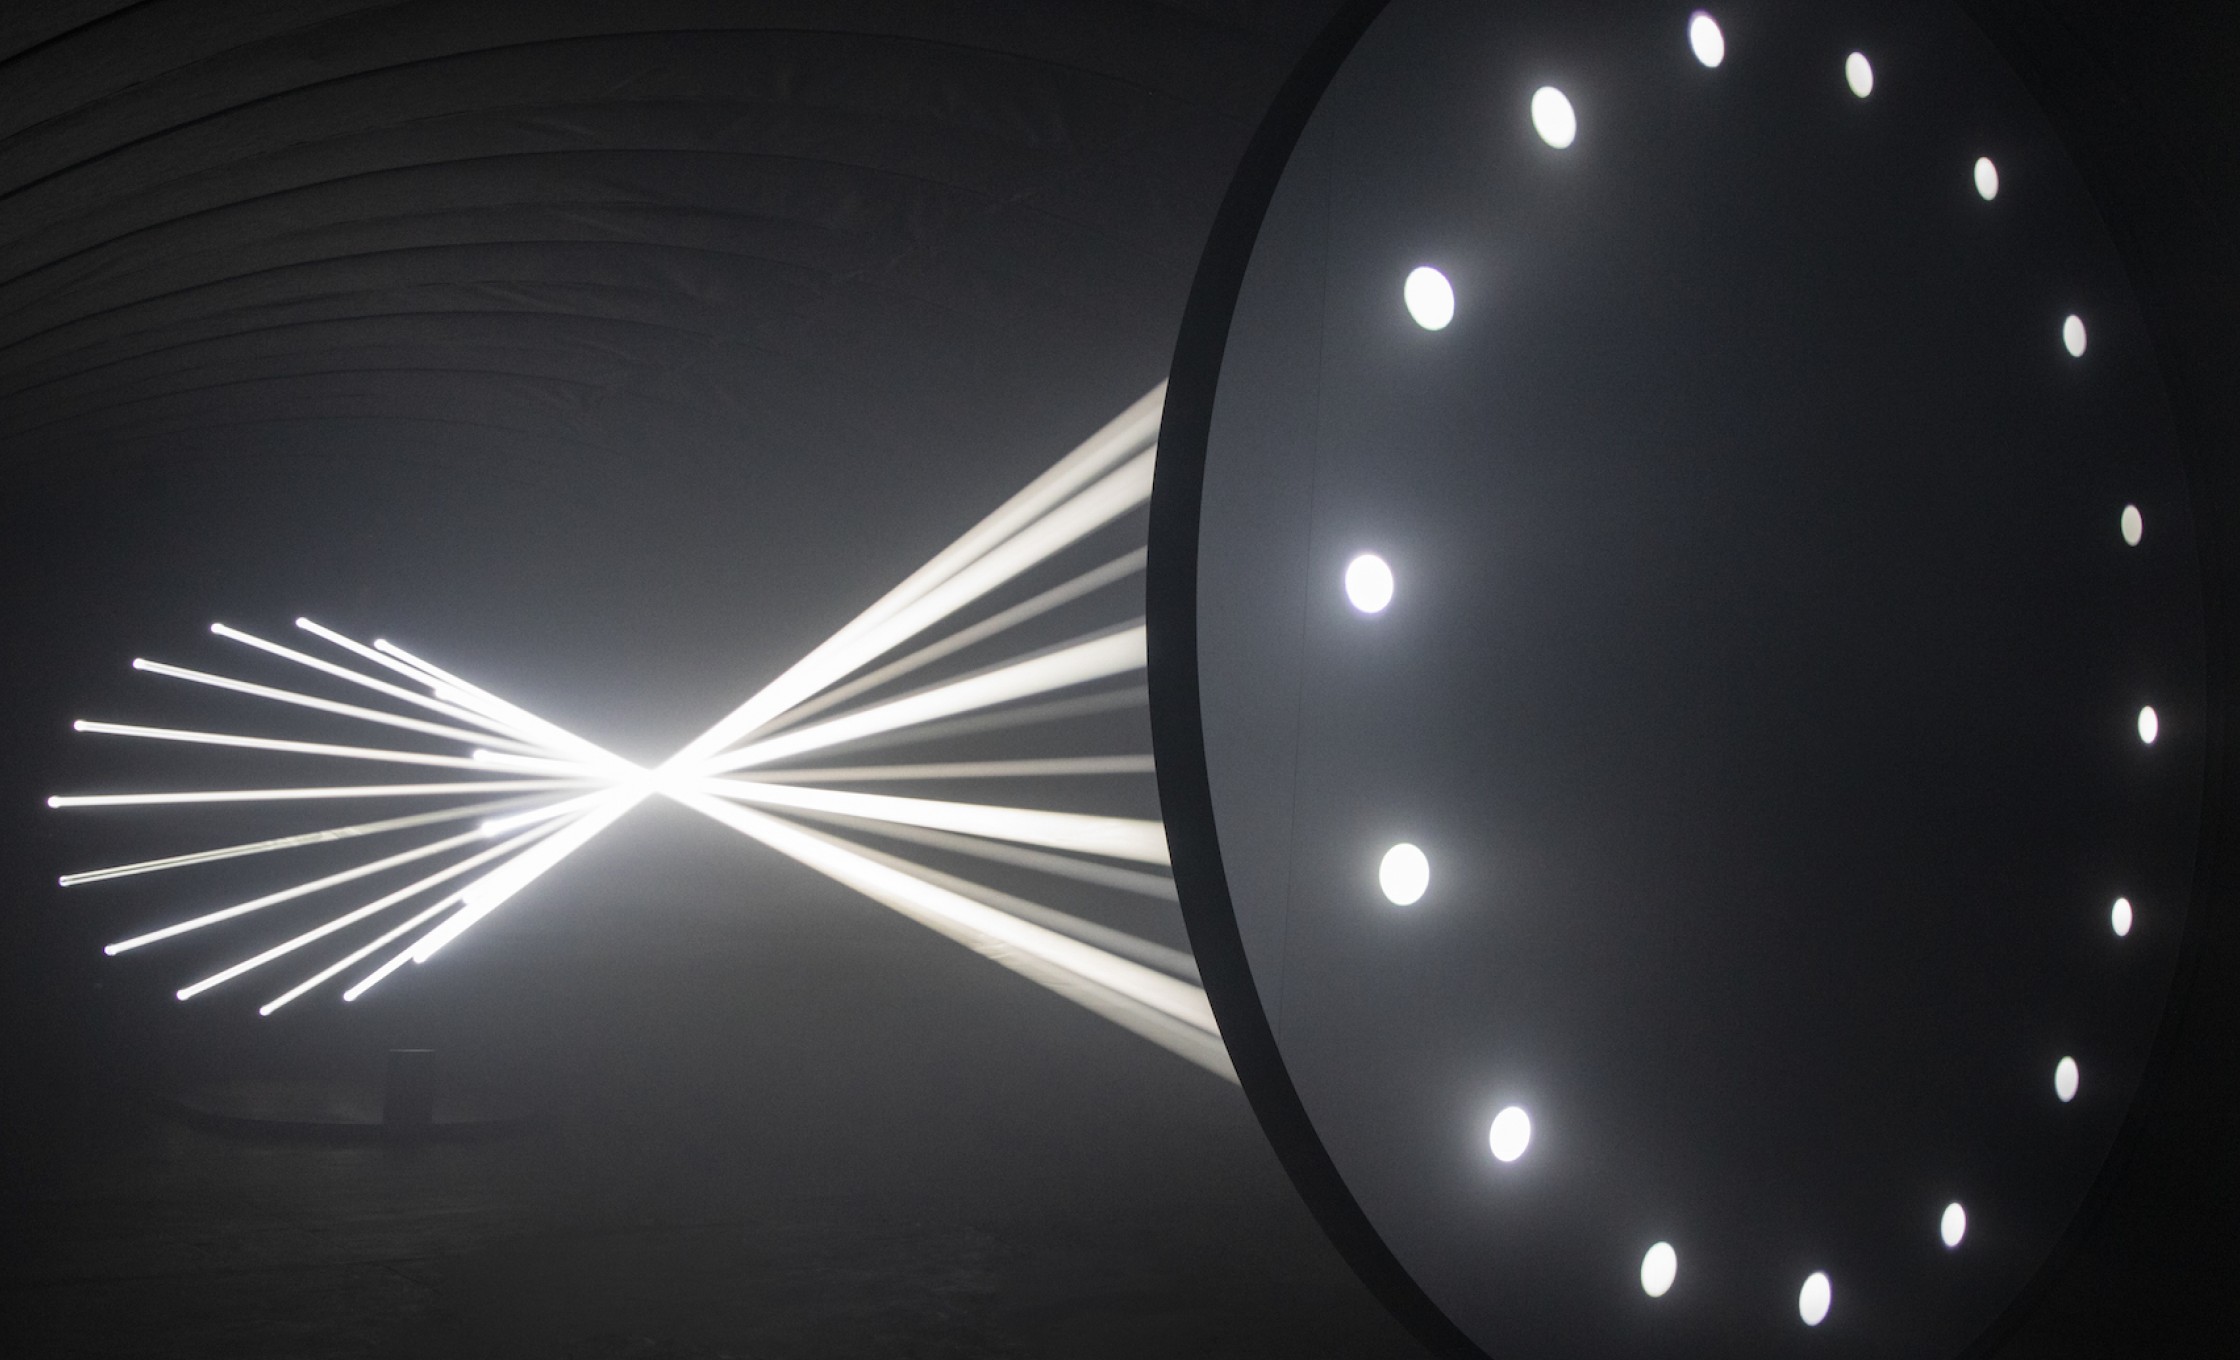 thegreeneyl licht light installation bodies in motion design week milan light points that interpret human motion